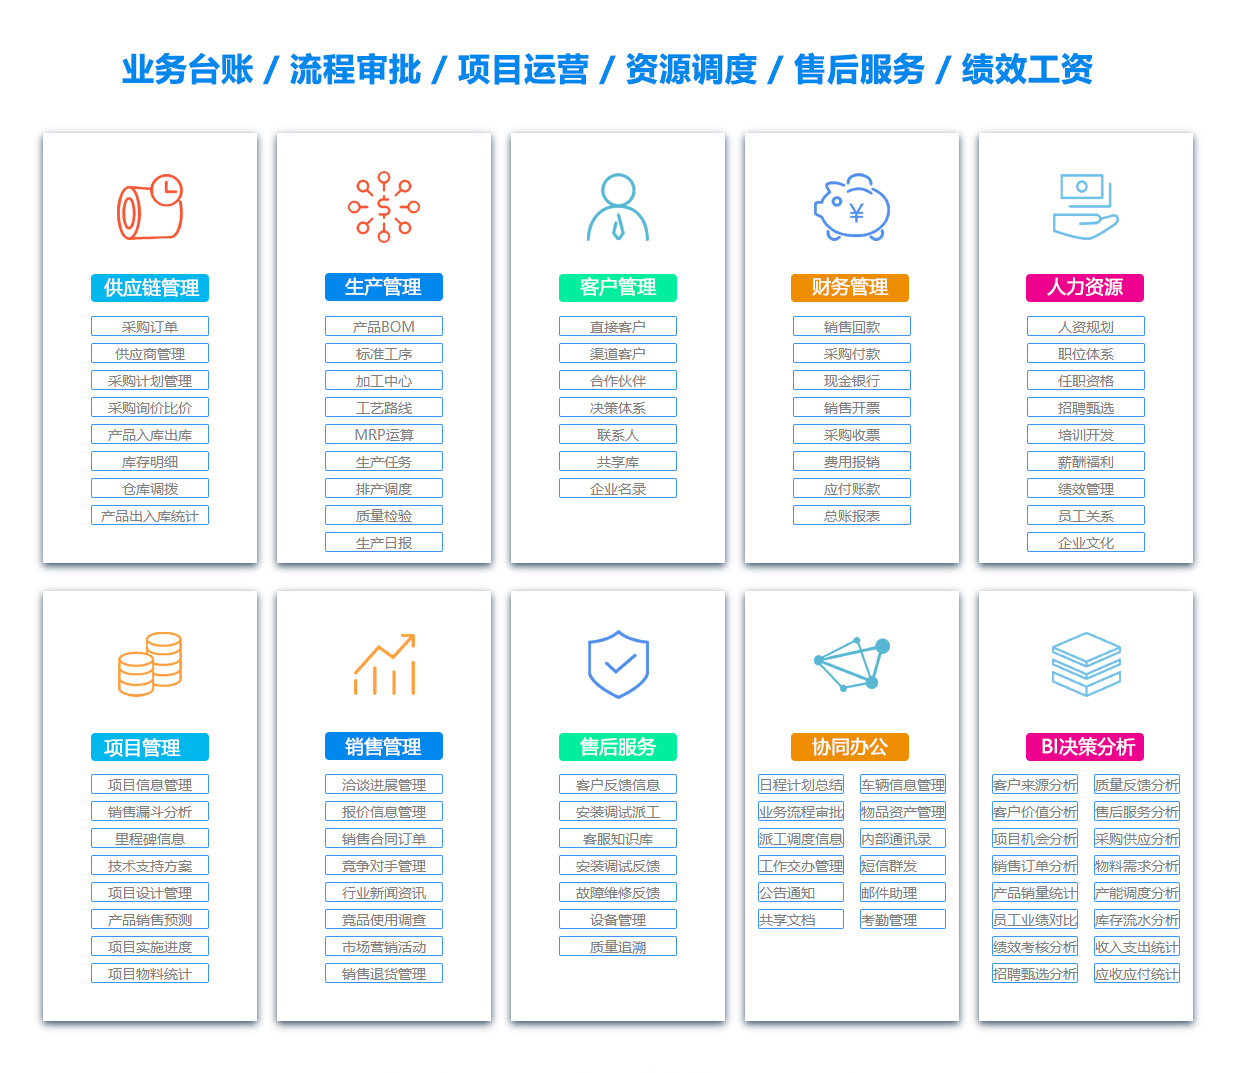 柳州BOM:物料清单软件